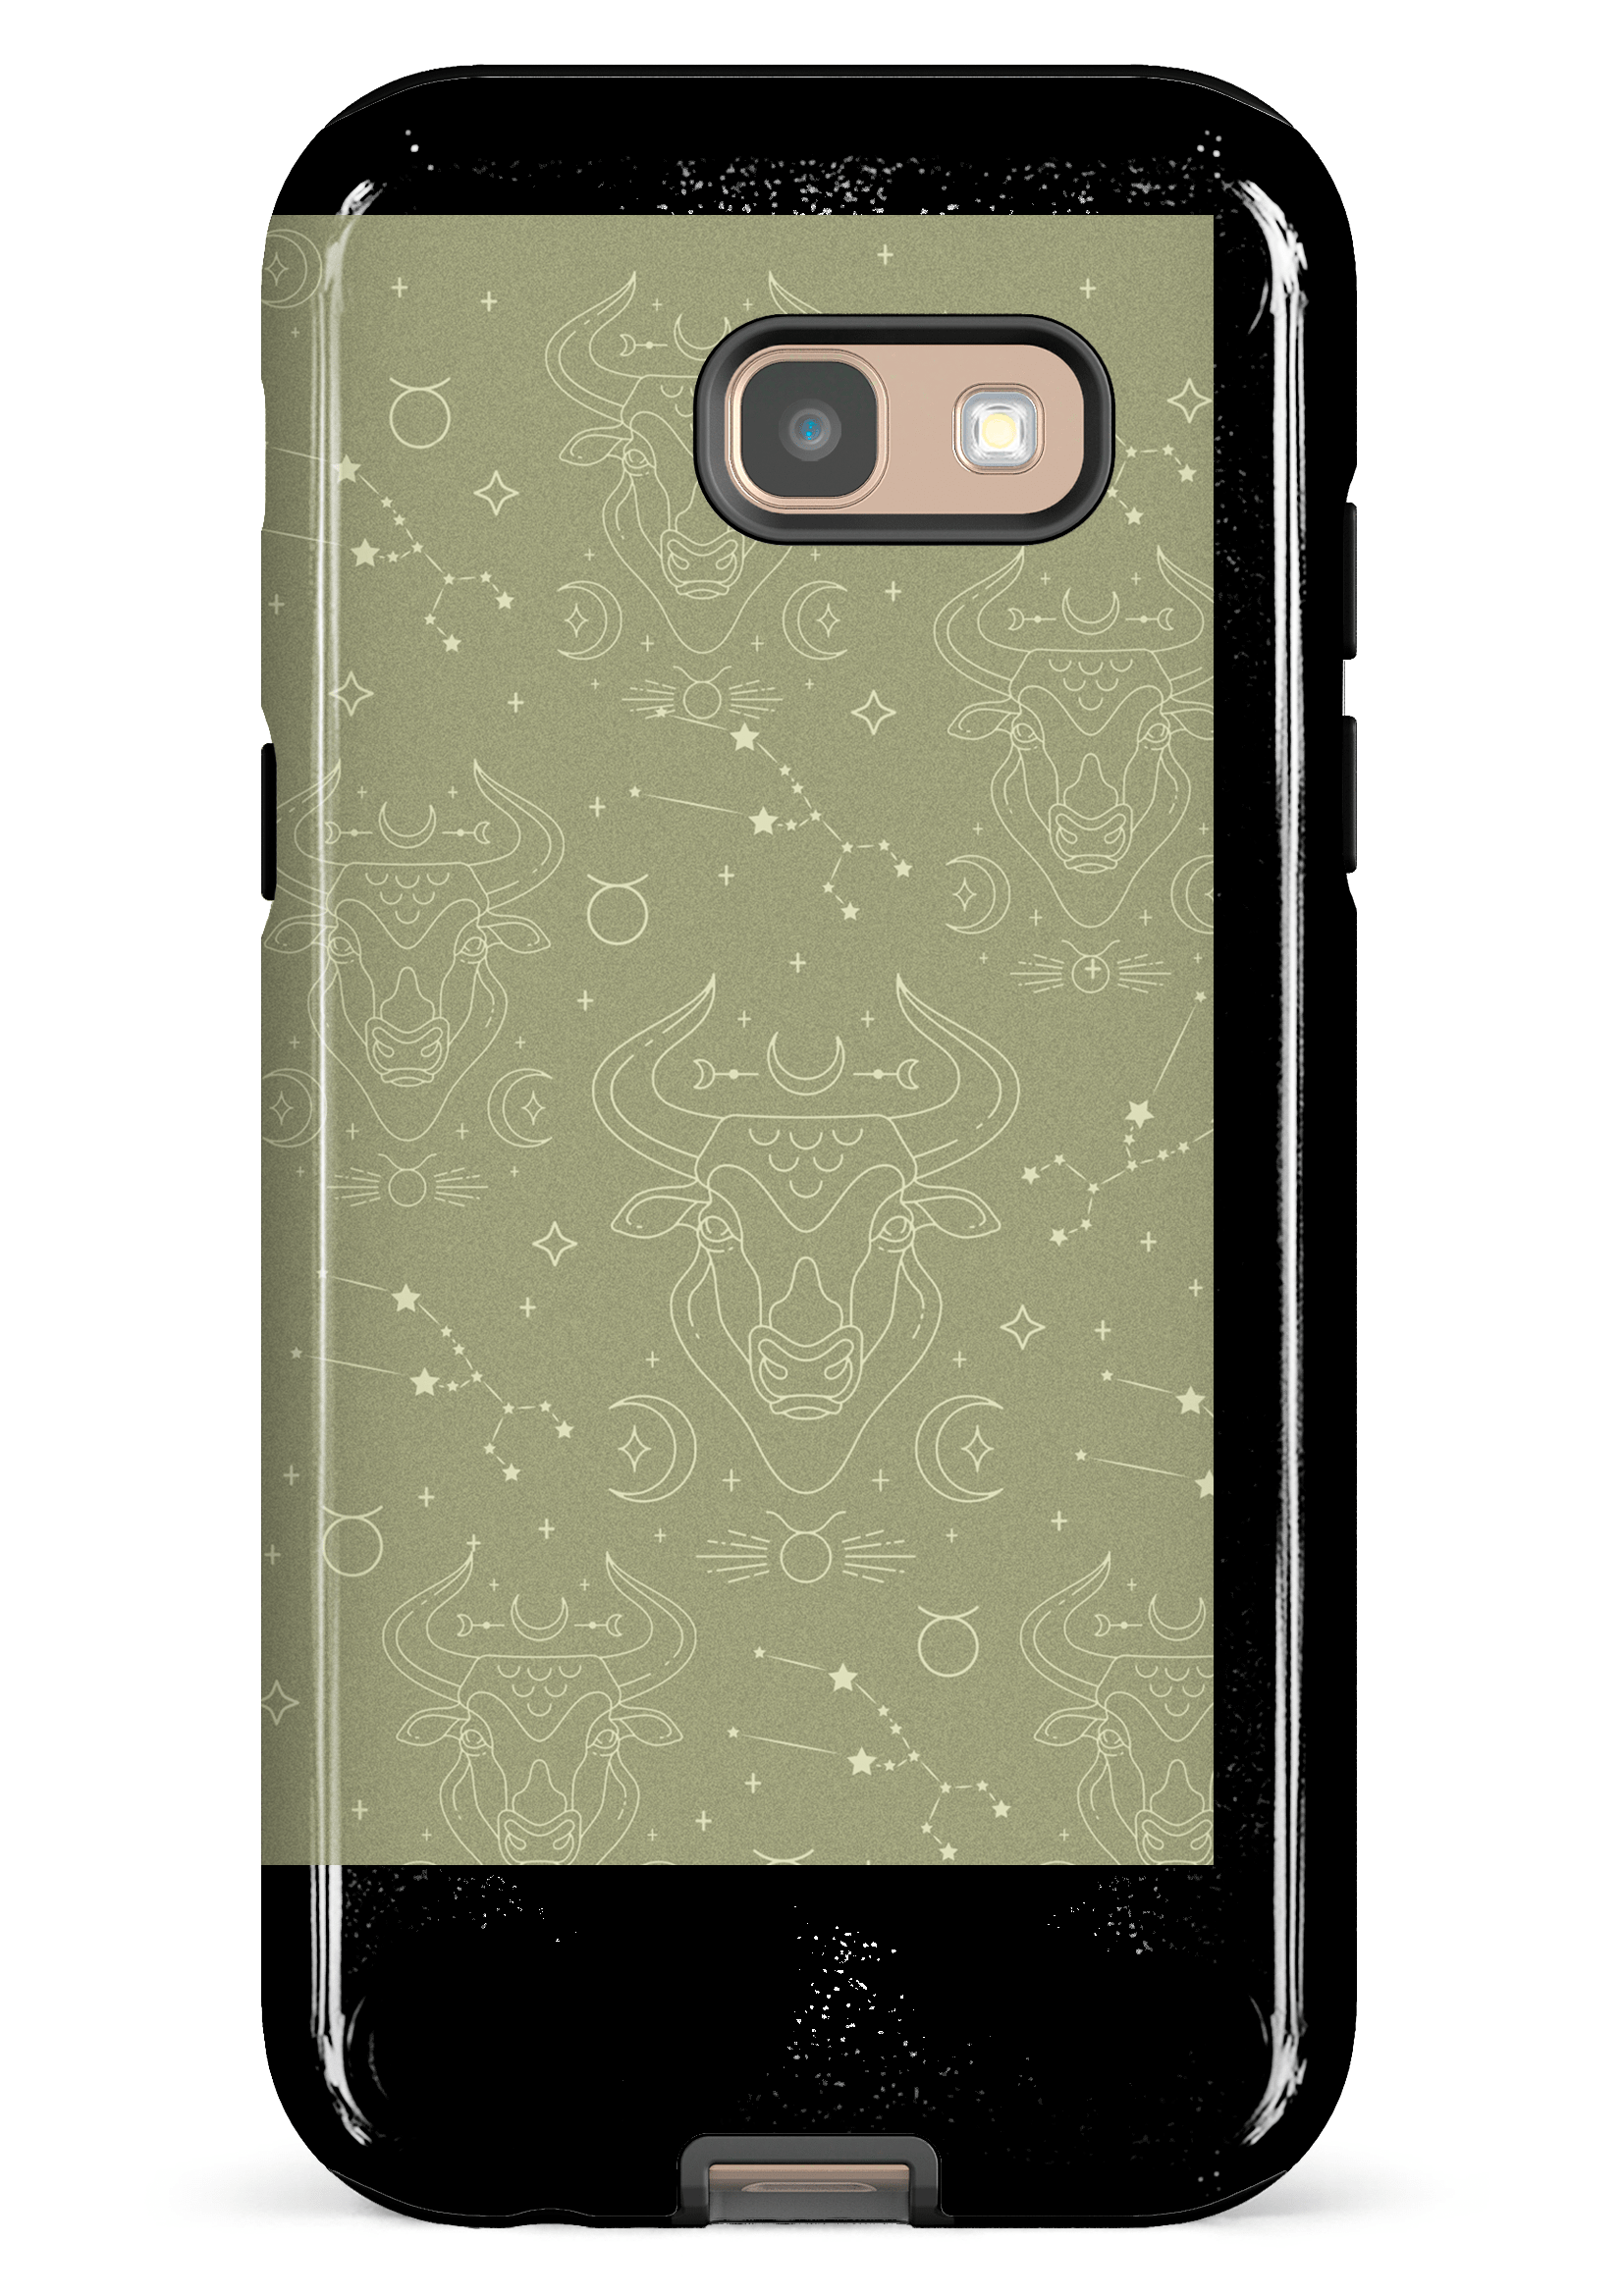 Taurus - Galaxy A5 (2017)